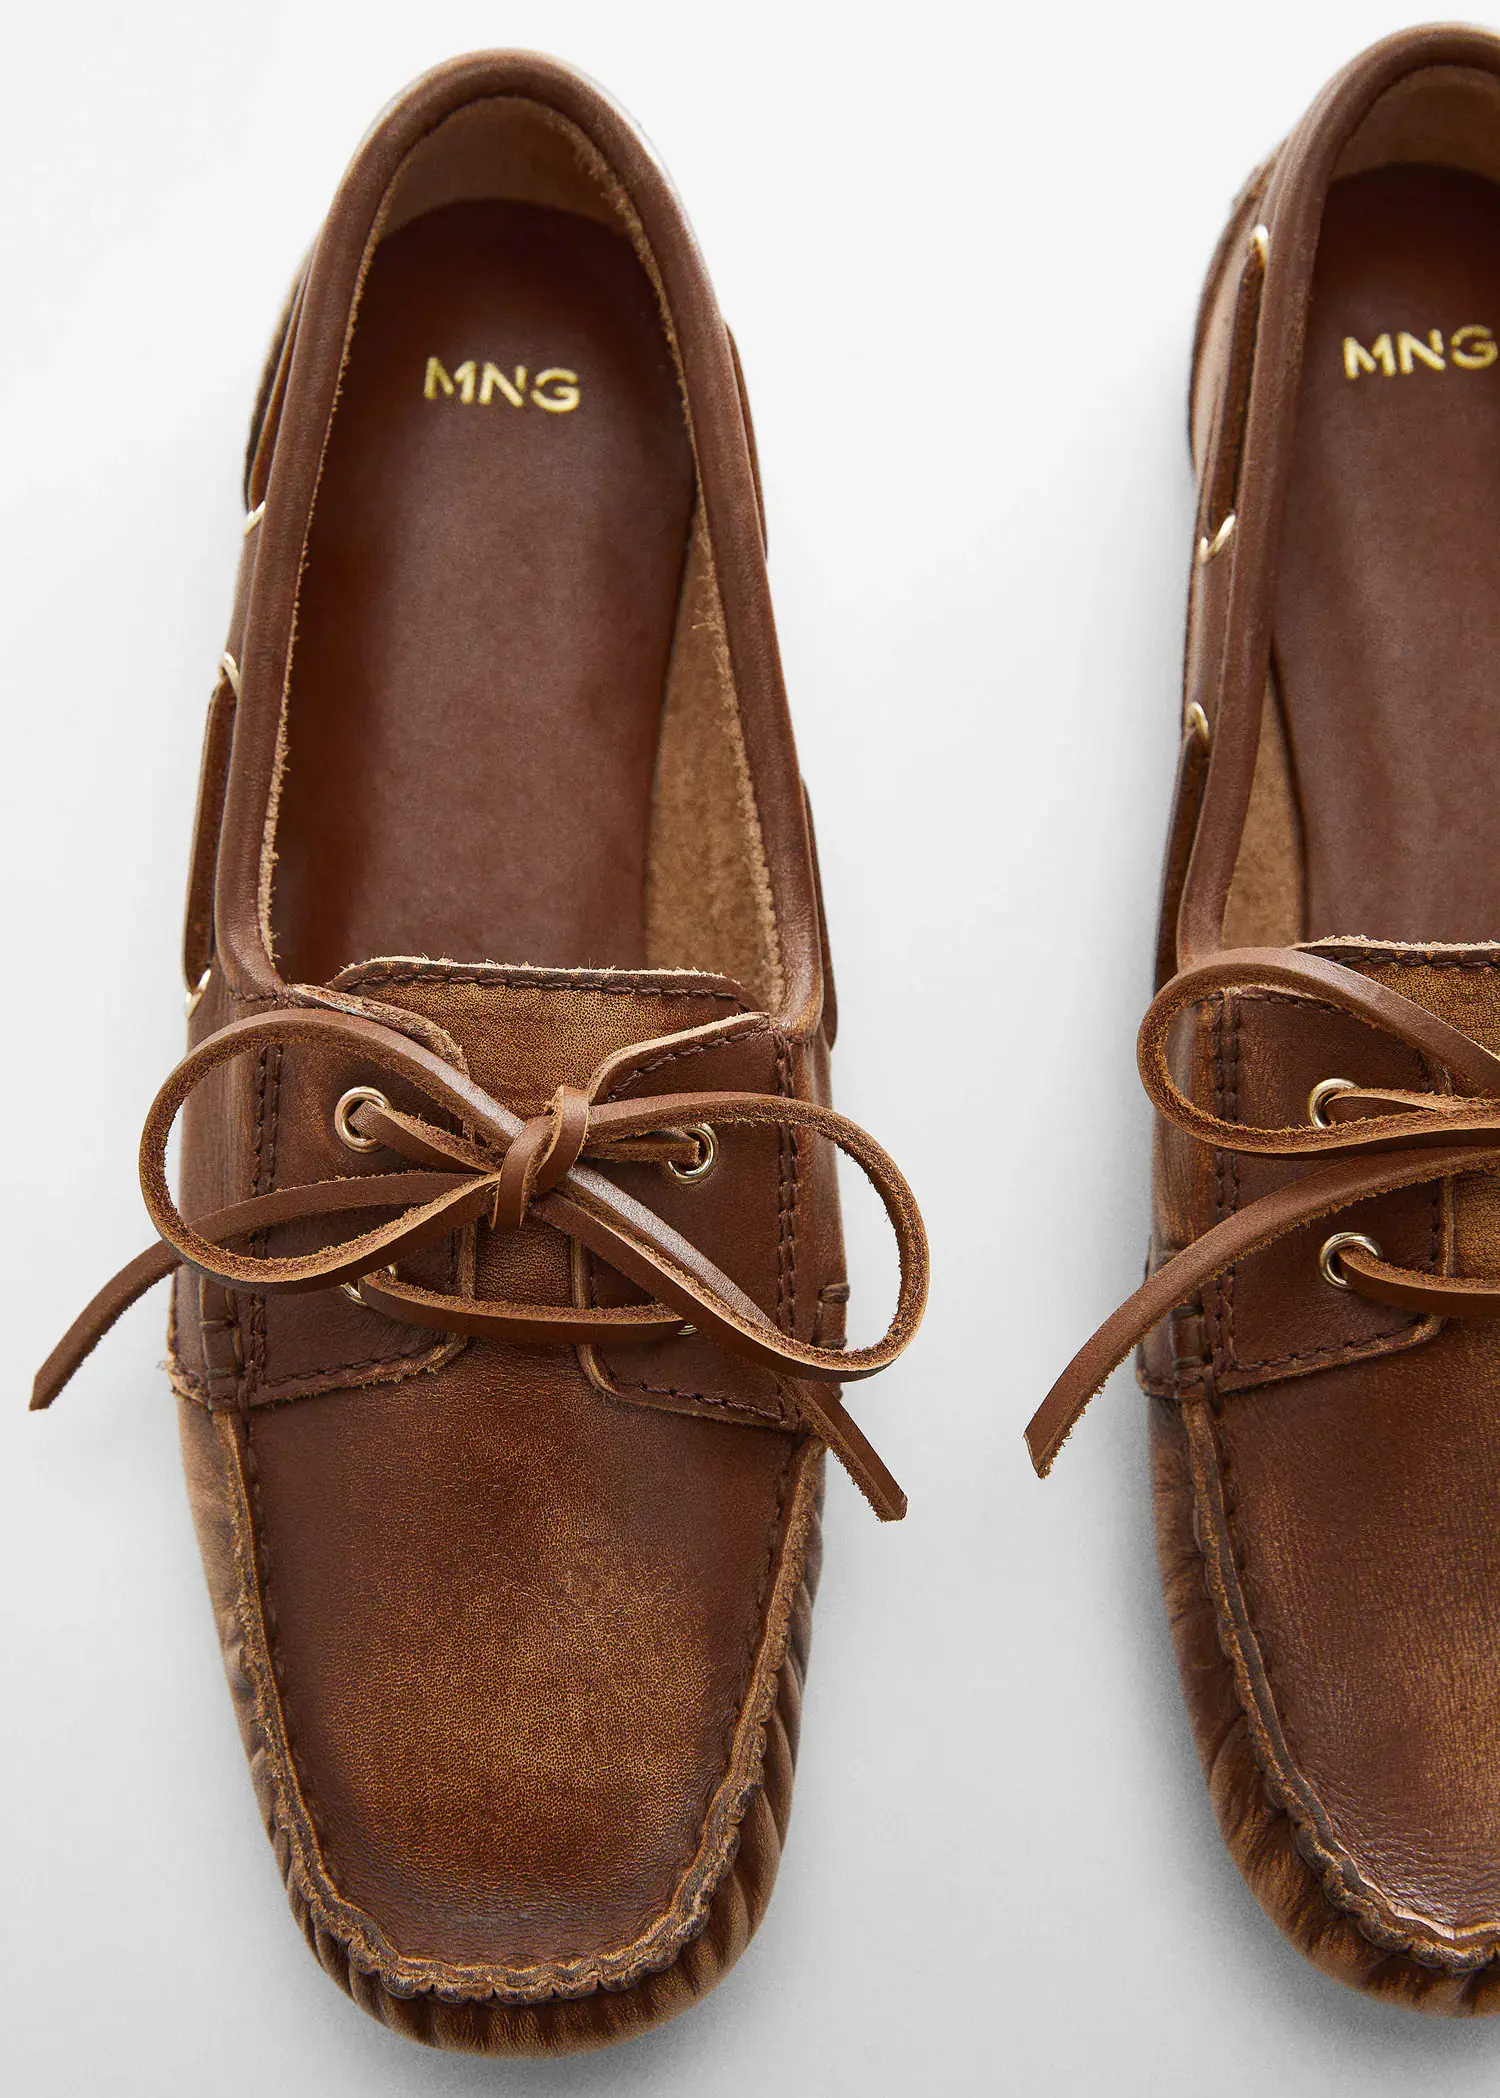 Mango Leather boat shoes. 1